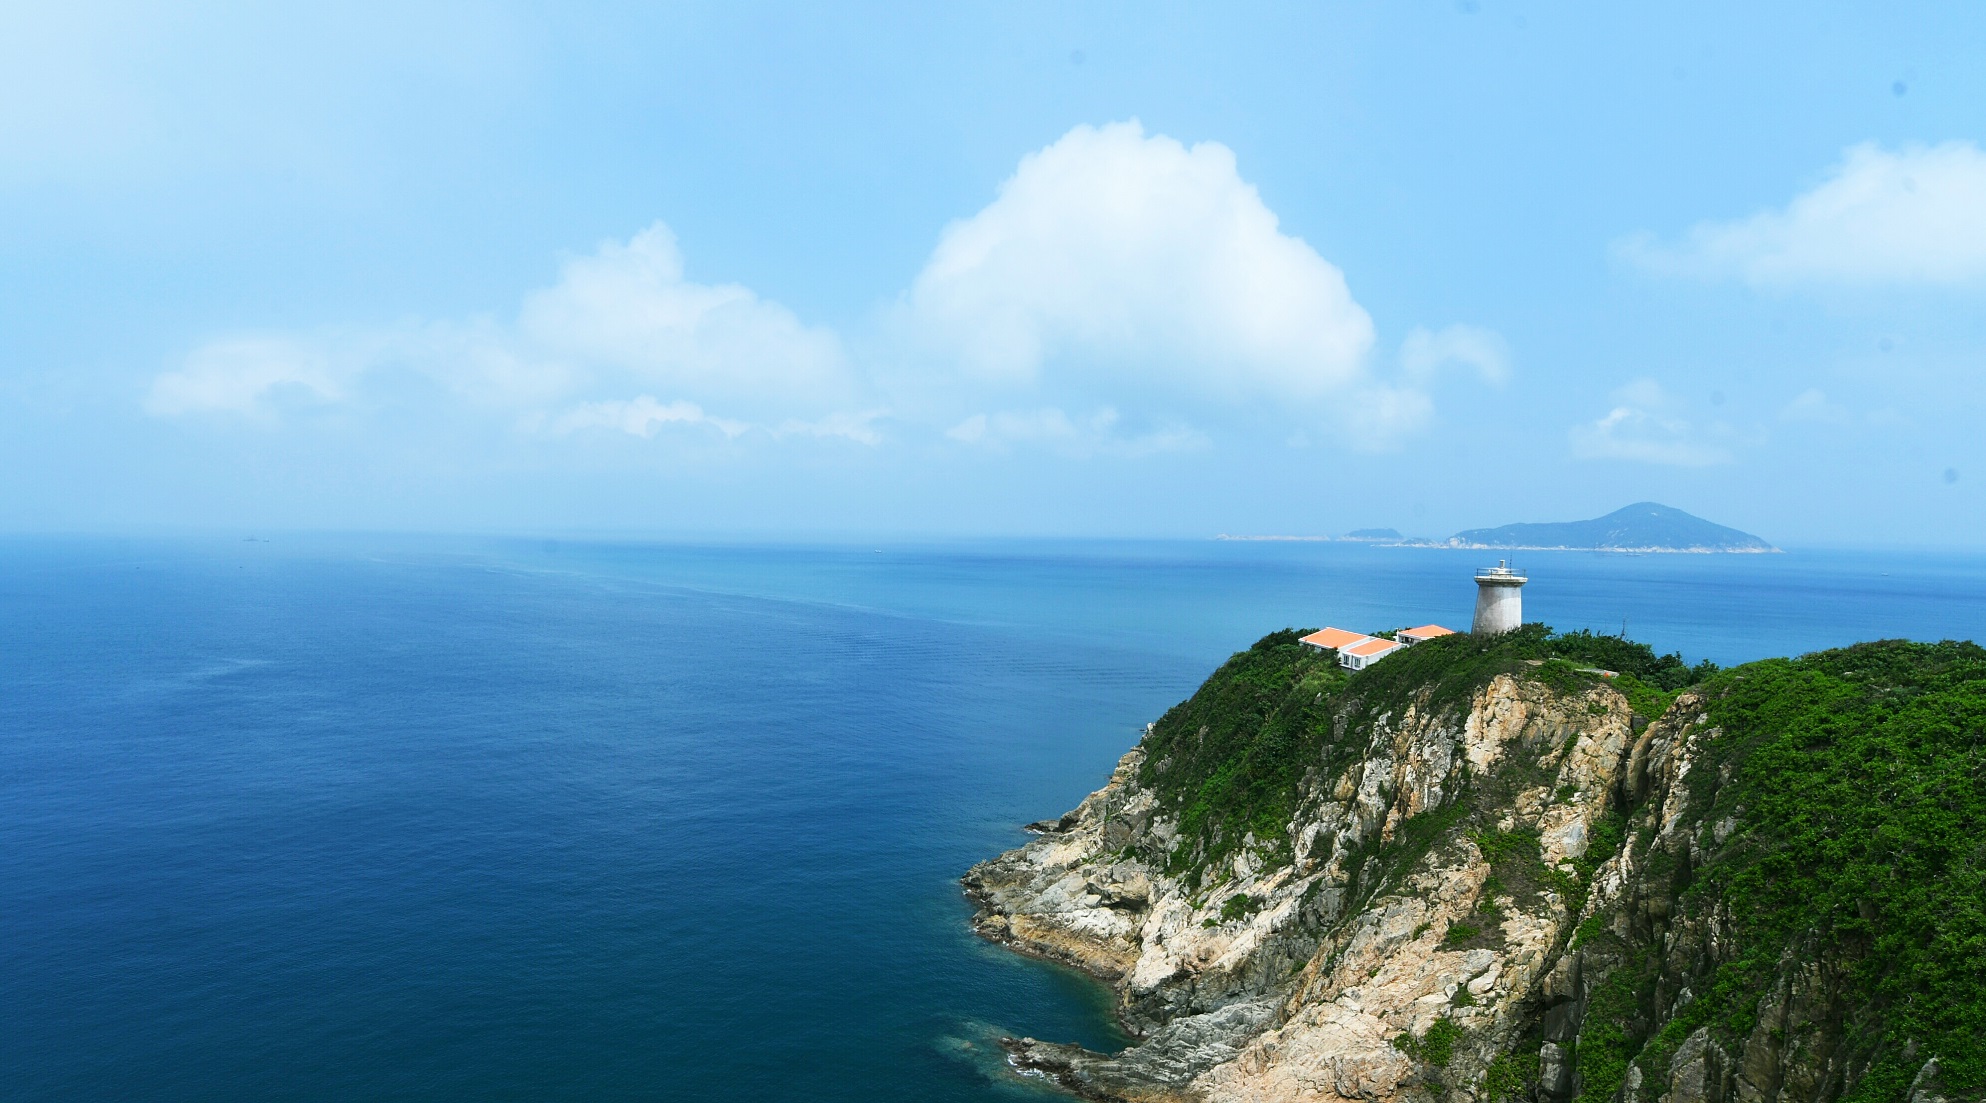 【留港旅遊】香港也有如此震撼的奇石景觀?!　以為身處外國的優美海岸線